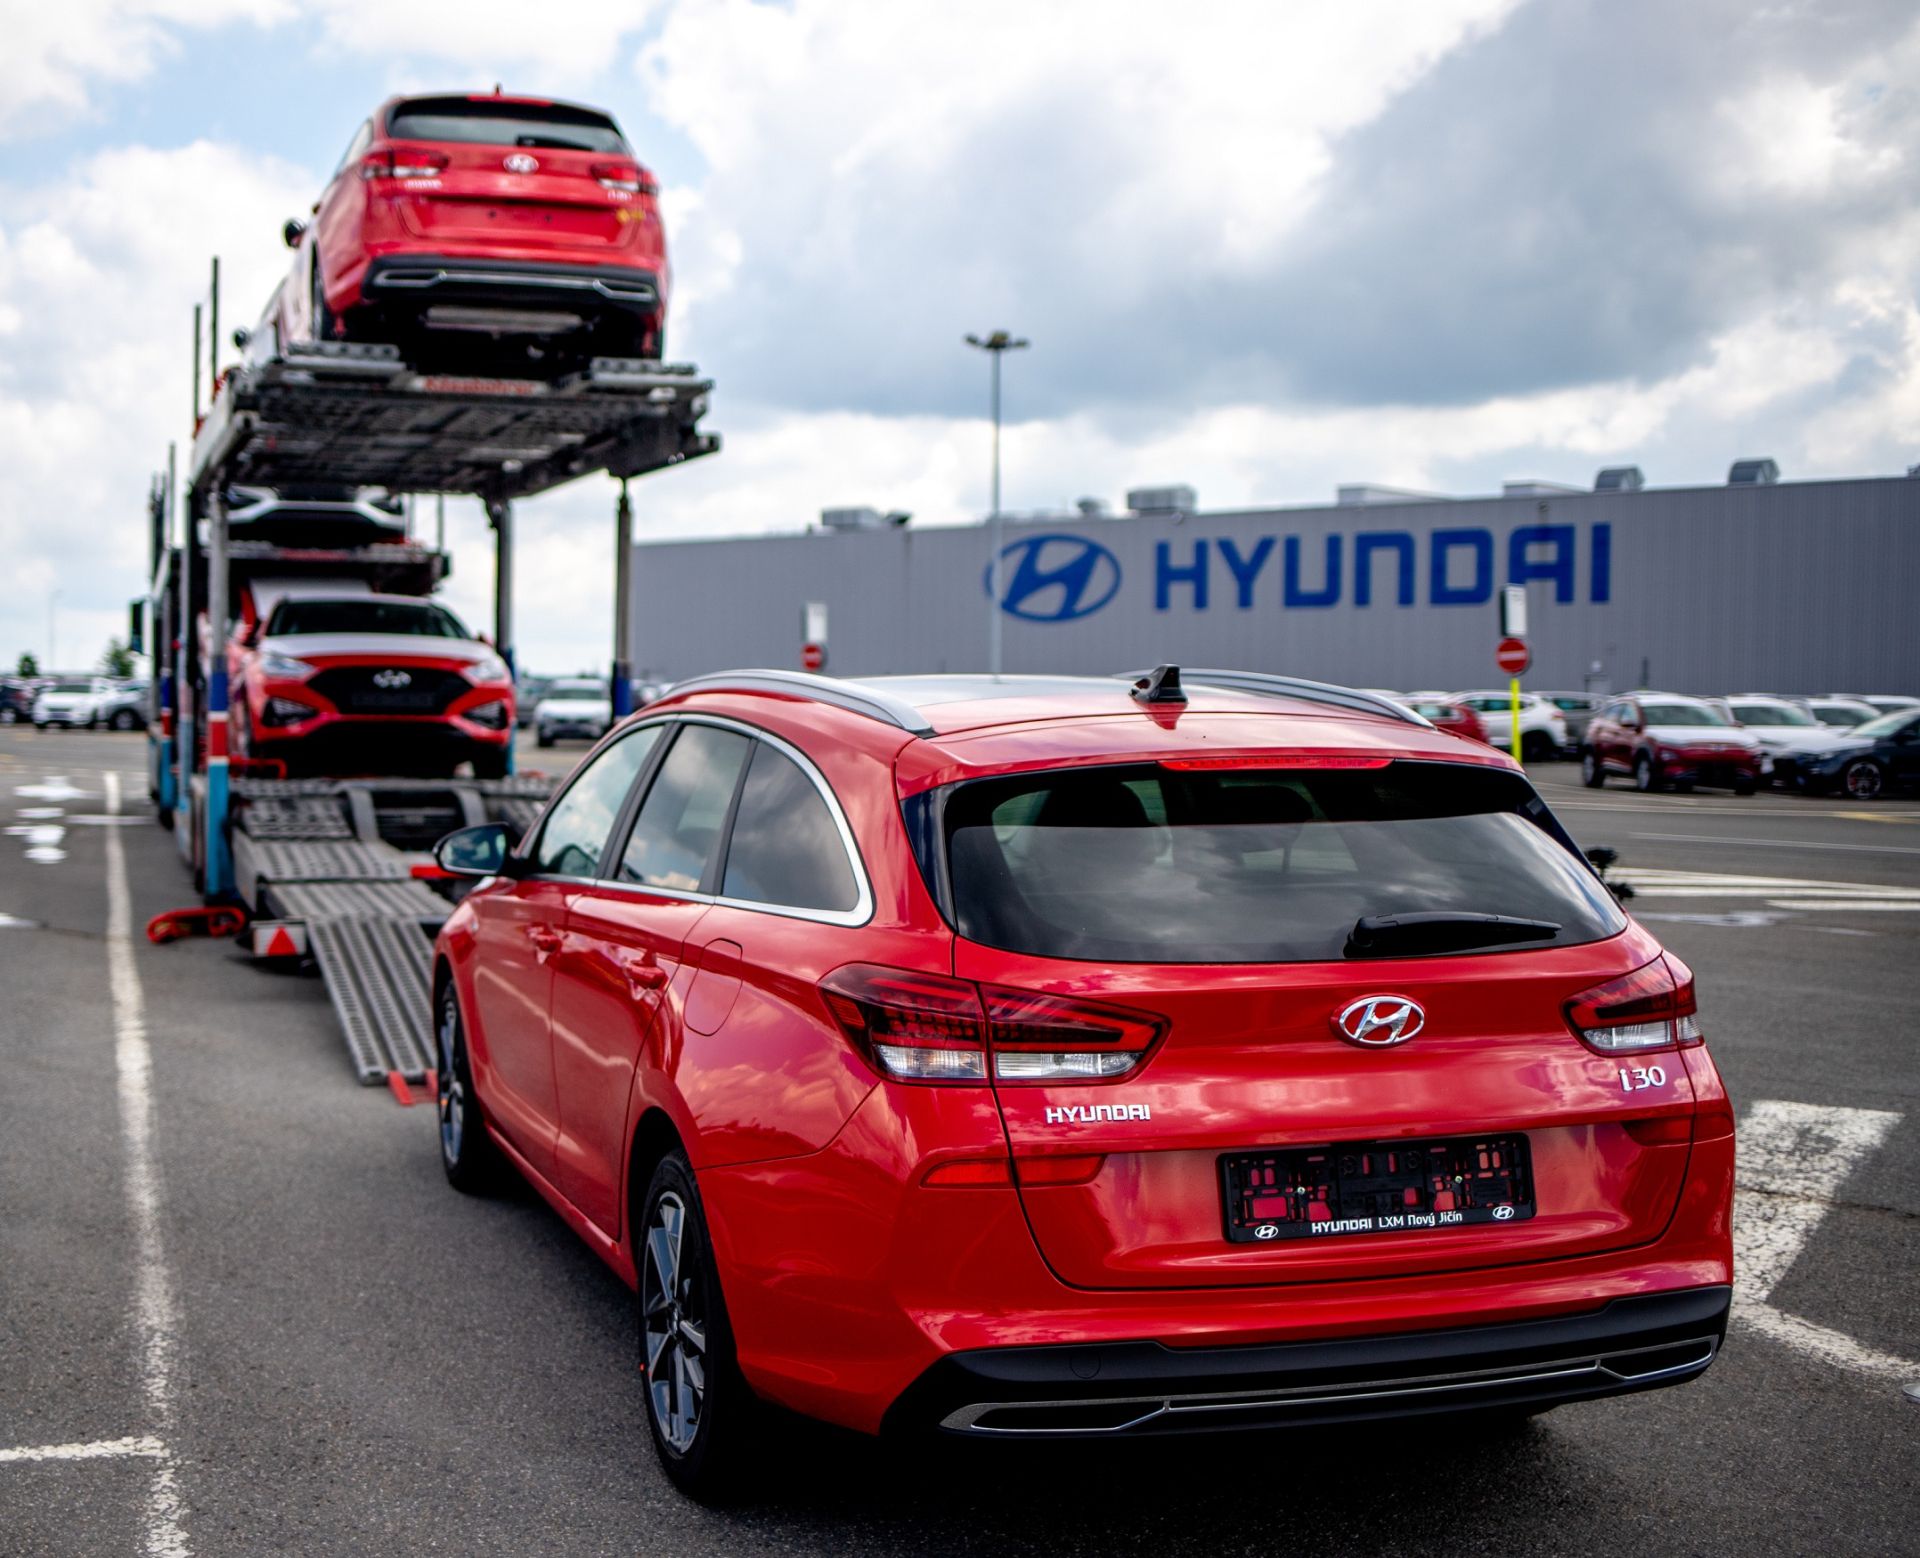 Odvoz vyrobených automobilů z Nošovic. Foto: Hyundai Motor Manufacturing Czech